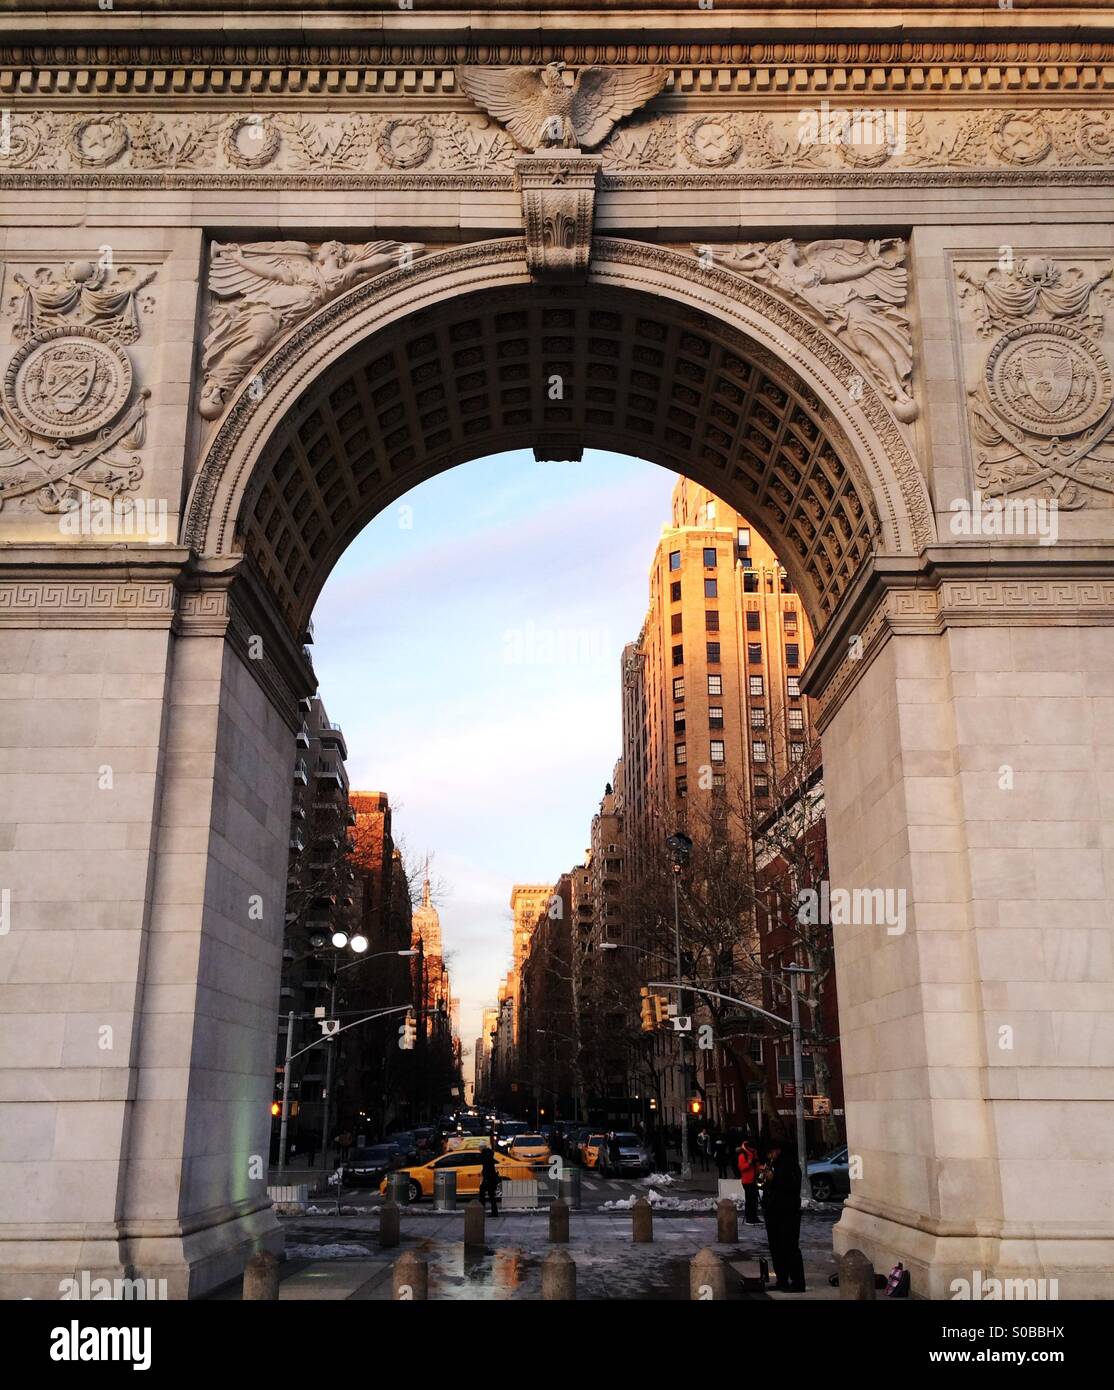 Washington Square Arch, aussi appelé l'arche de Washington, à Washington Square Park, Manhattan, New York City, USA. Banque D'Images